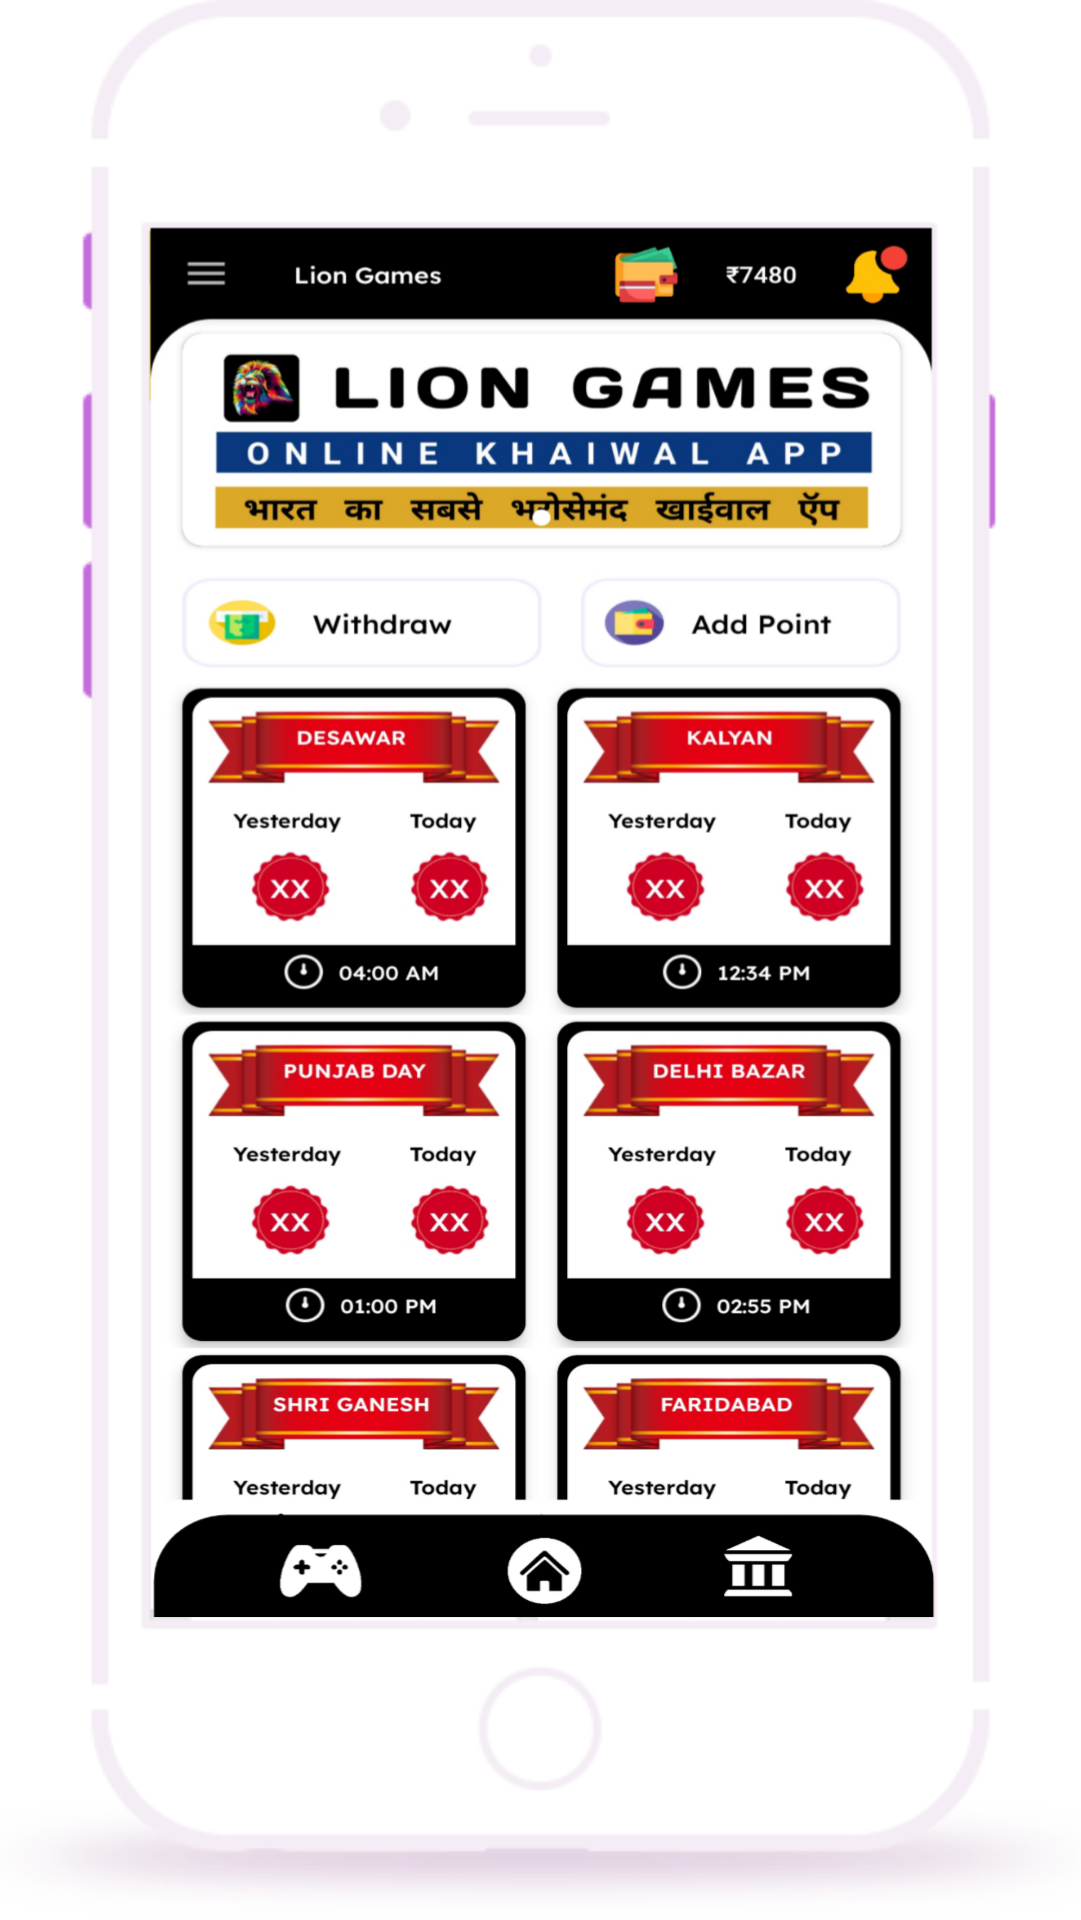 lion games Online khaiwal App